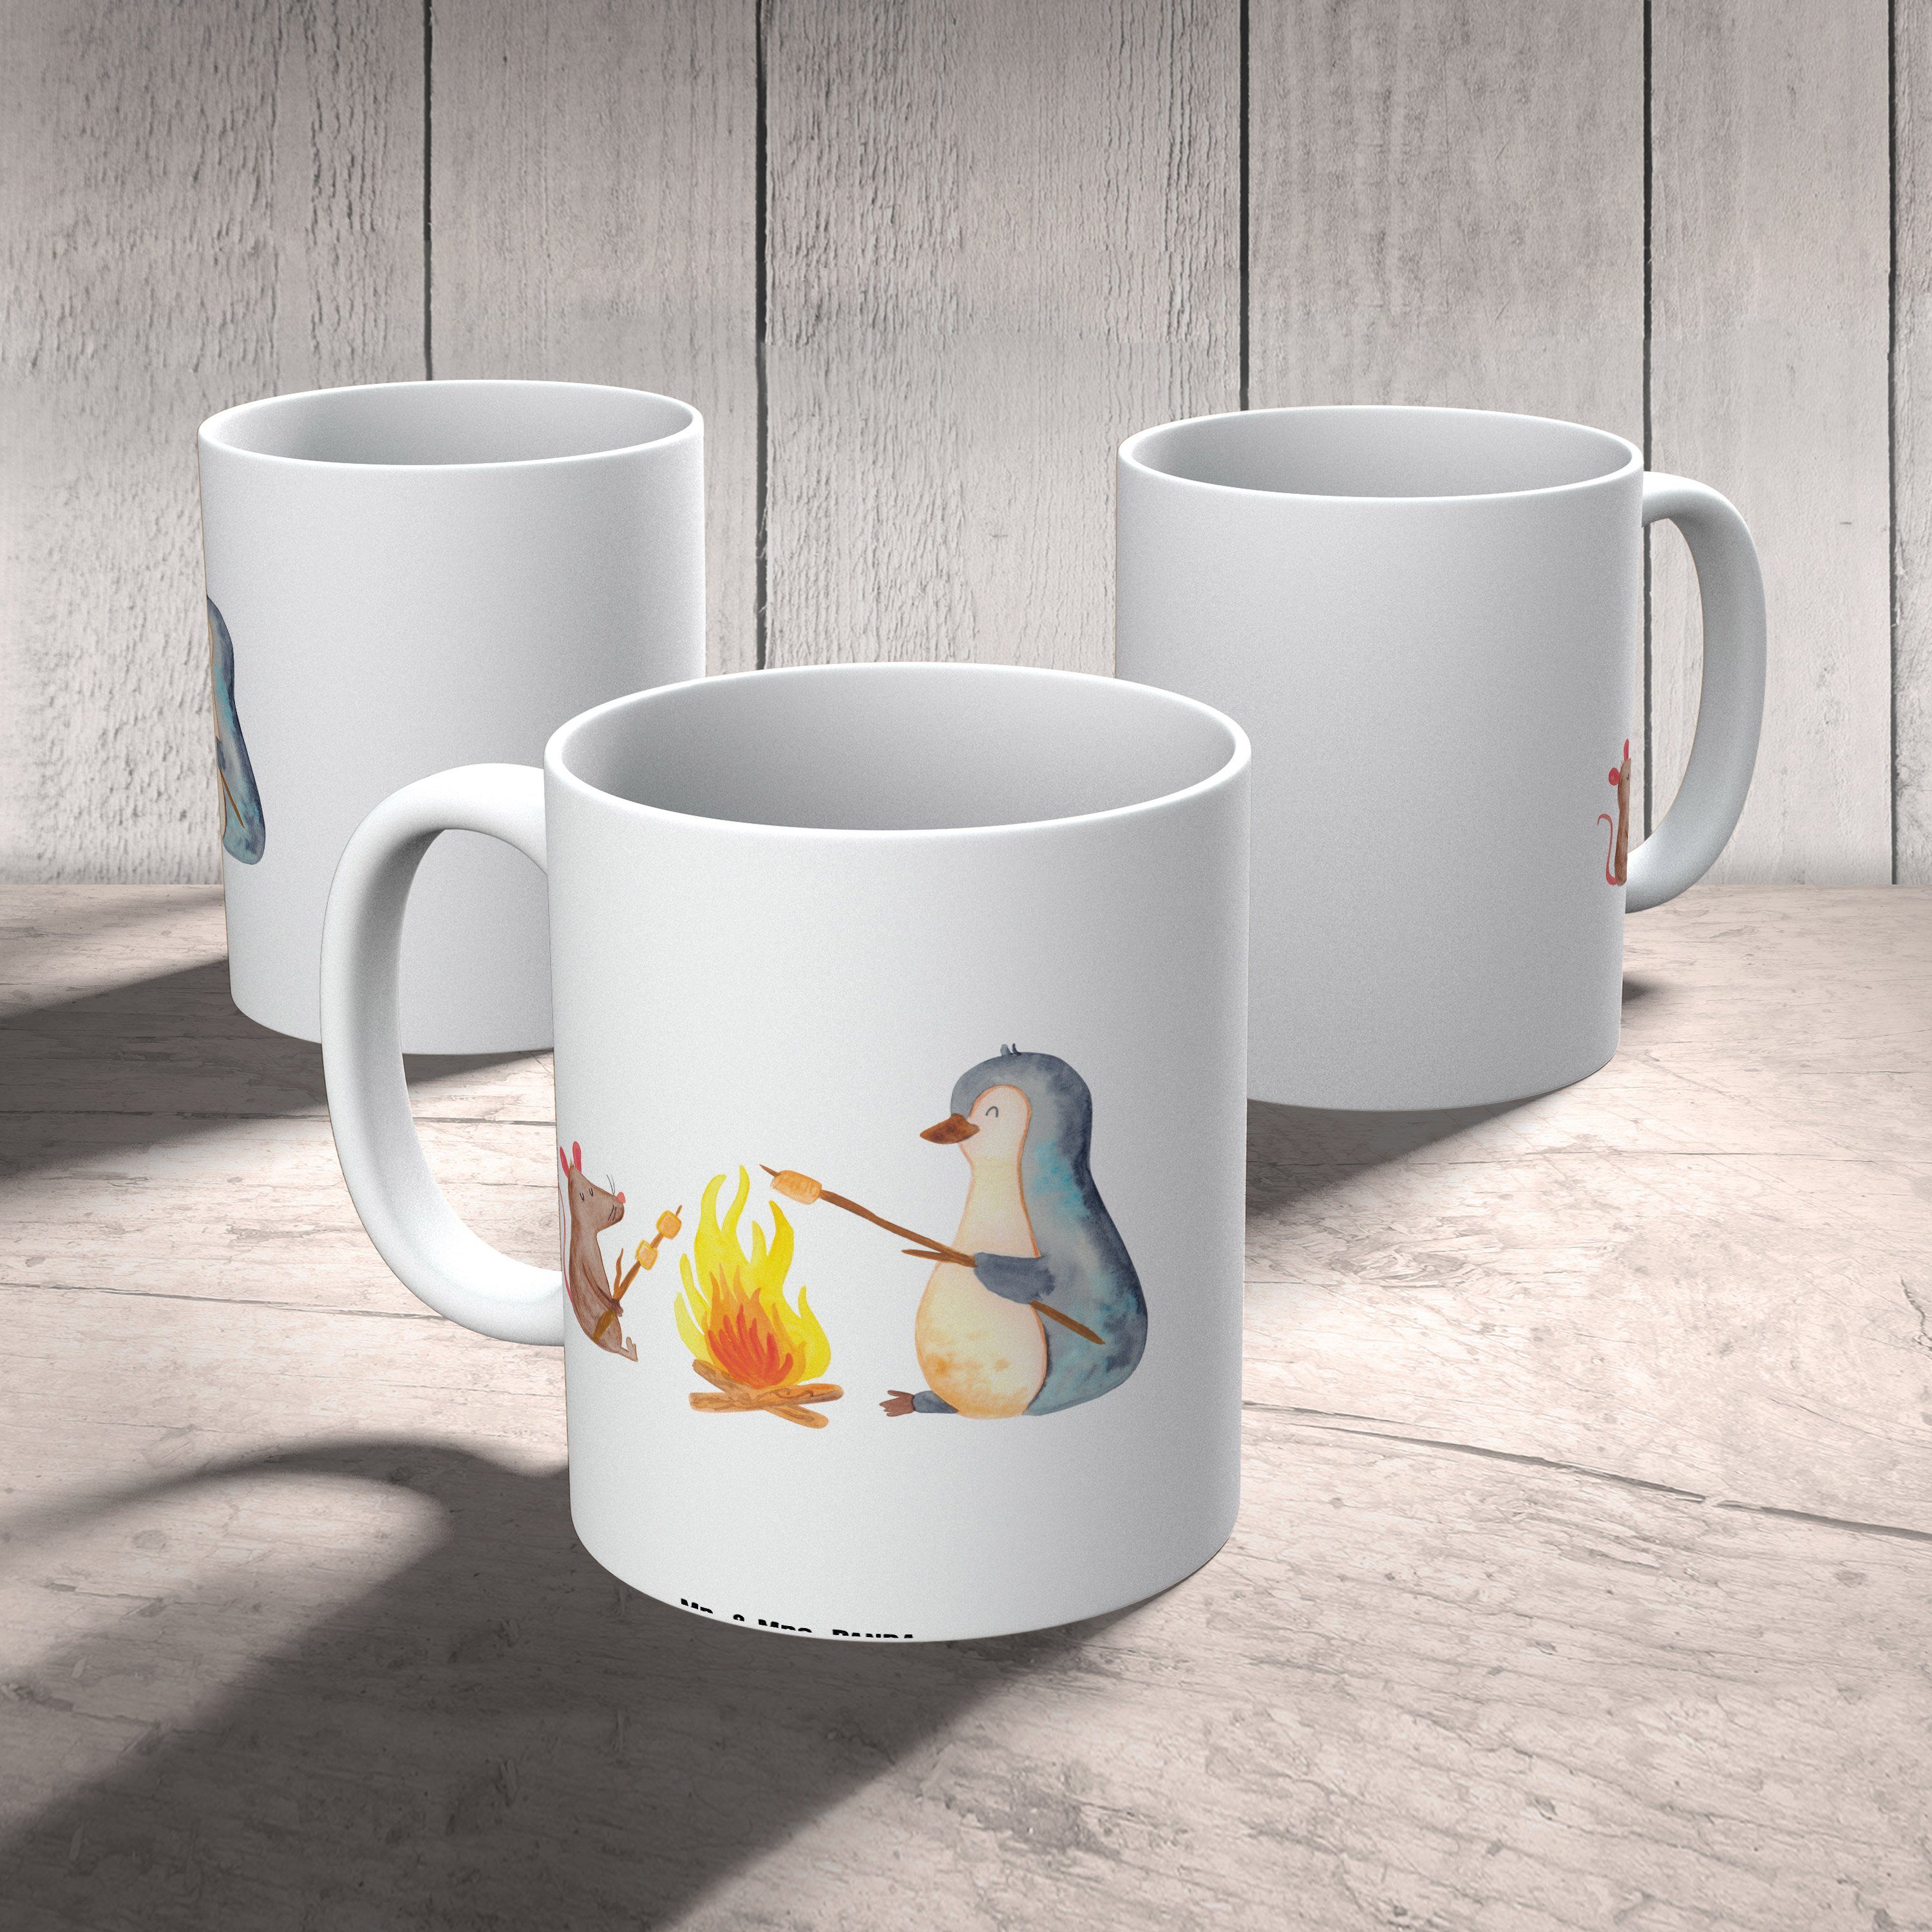 Pinguin Tasse, - Geschenk, Weiß Mr. Panda Keramik & XL Lagerfeuer Mrs. - Marshmallows, Tasse Tasse Große Maus,